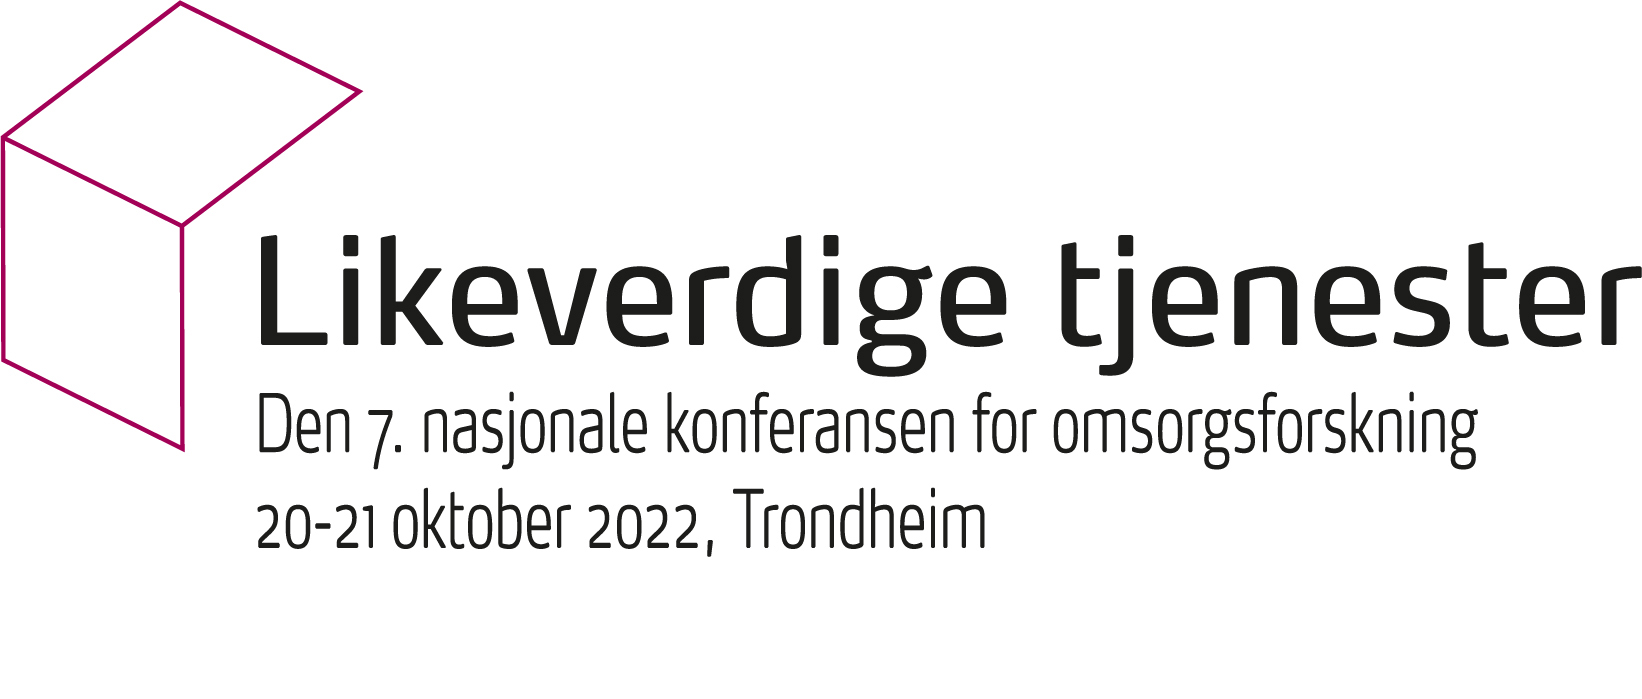 Likeverdige tjesester Den 7. nasjonale konferansen for omsorgsforskning. 21-22 oktober 2022, Trondheim